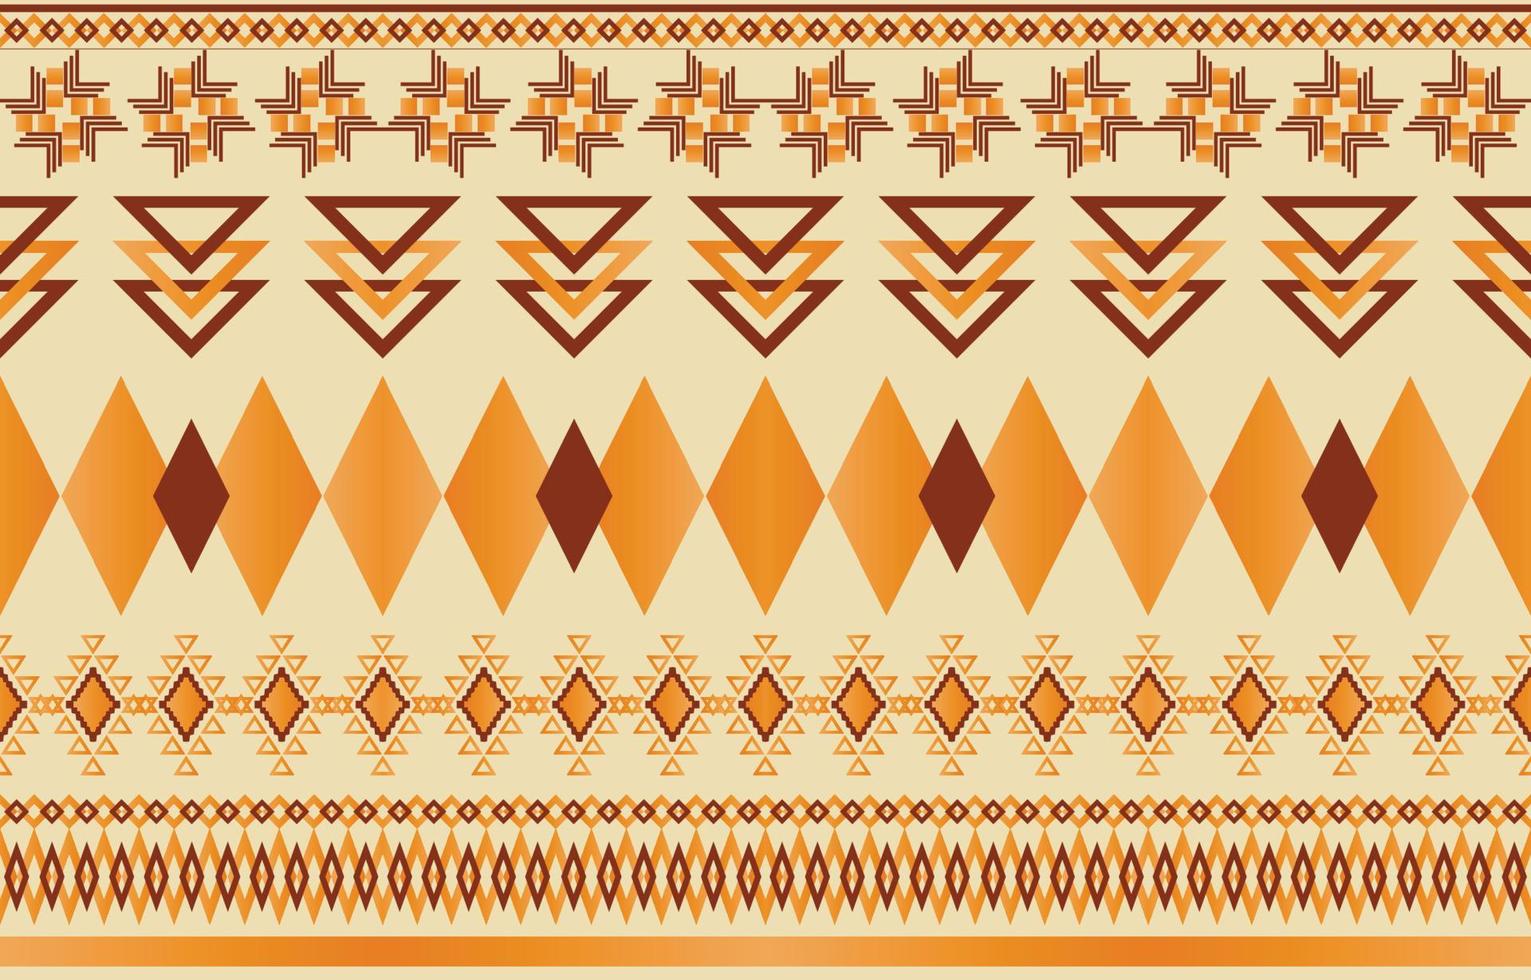 Navajo-Indianer-Stoff nahtloses Muster, geometrischer Stammes-ethnischer traditioneller Hintergrund, Design-Elemente, Design für Teppich, Tapete, Kleidung, Teppich, Interieur, Stickerei-Vektor-Illustration. vektor